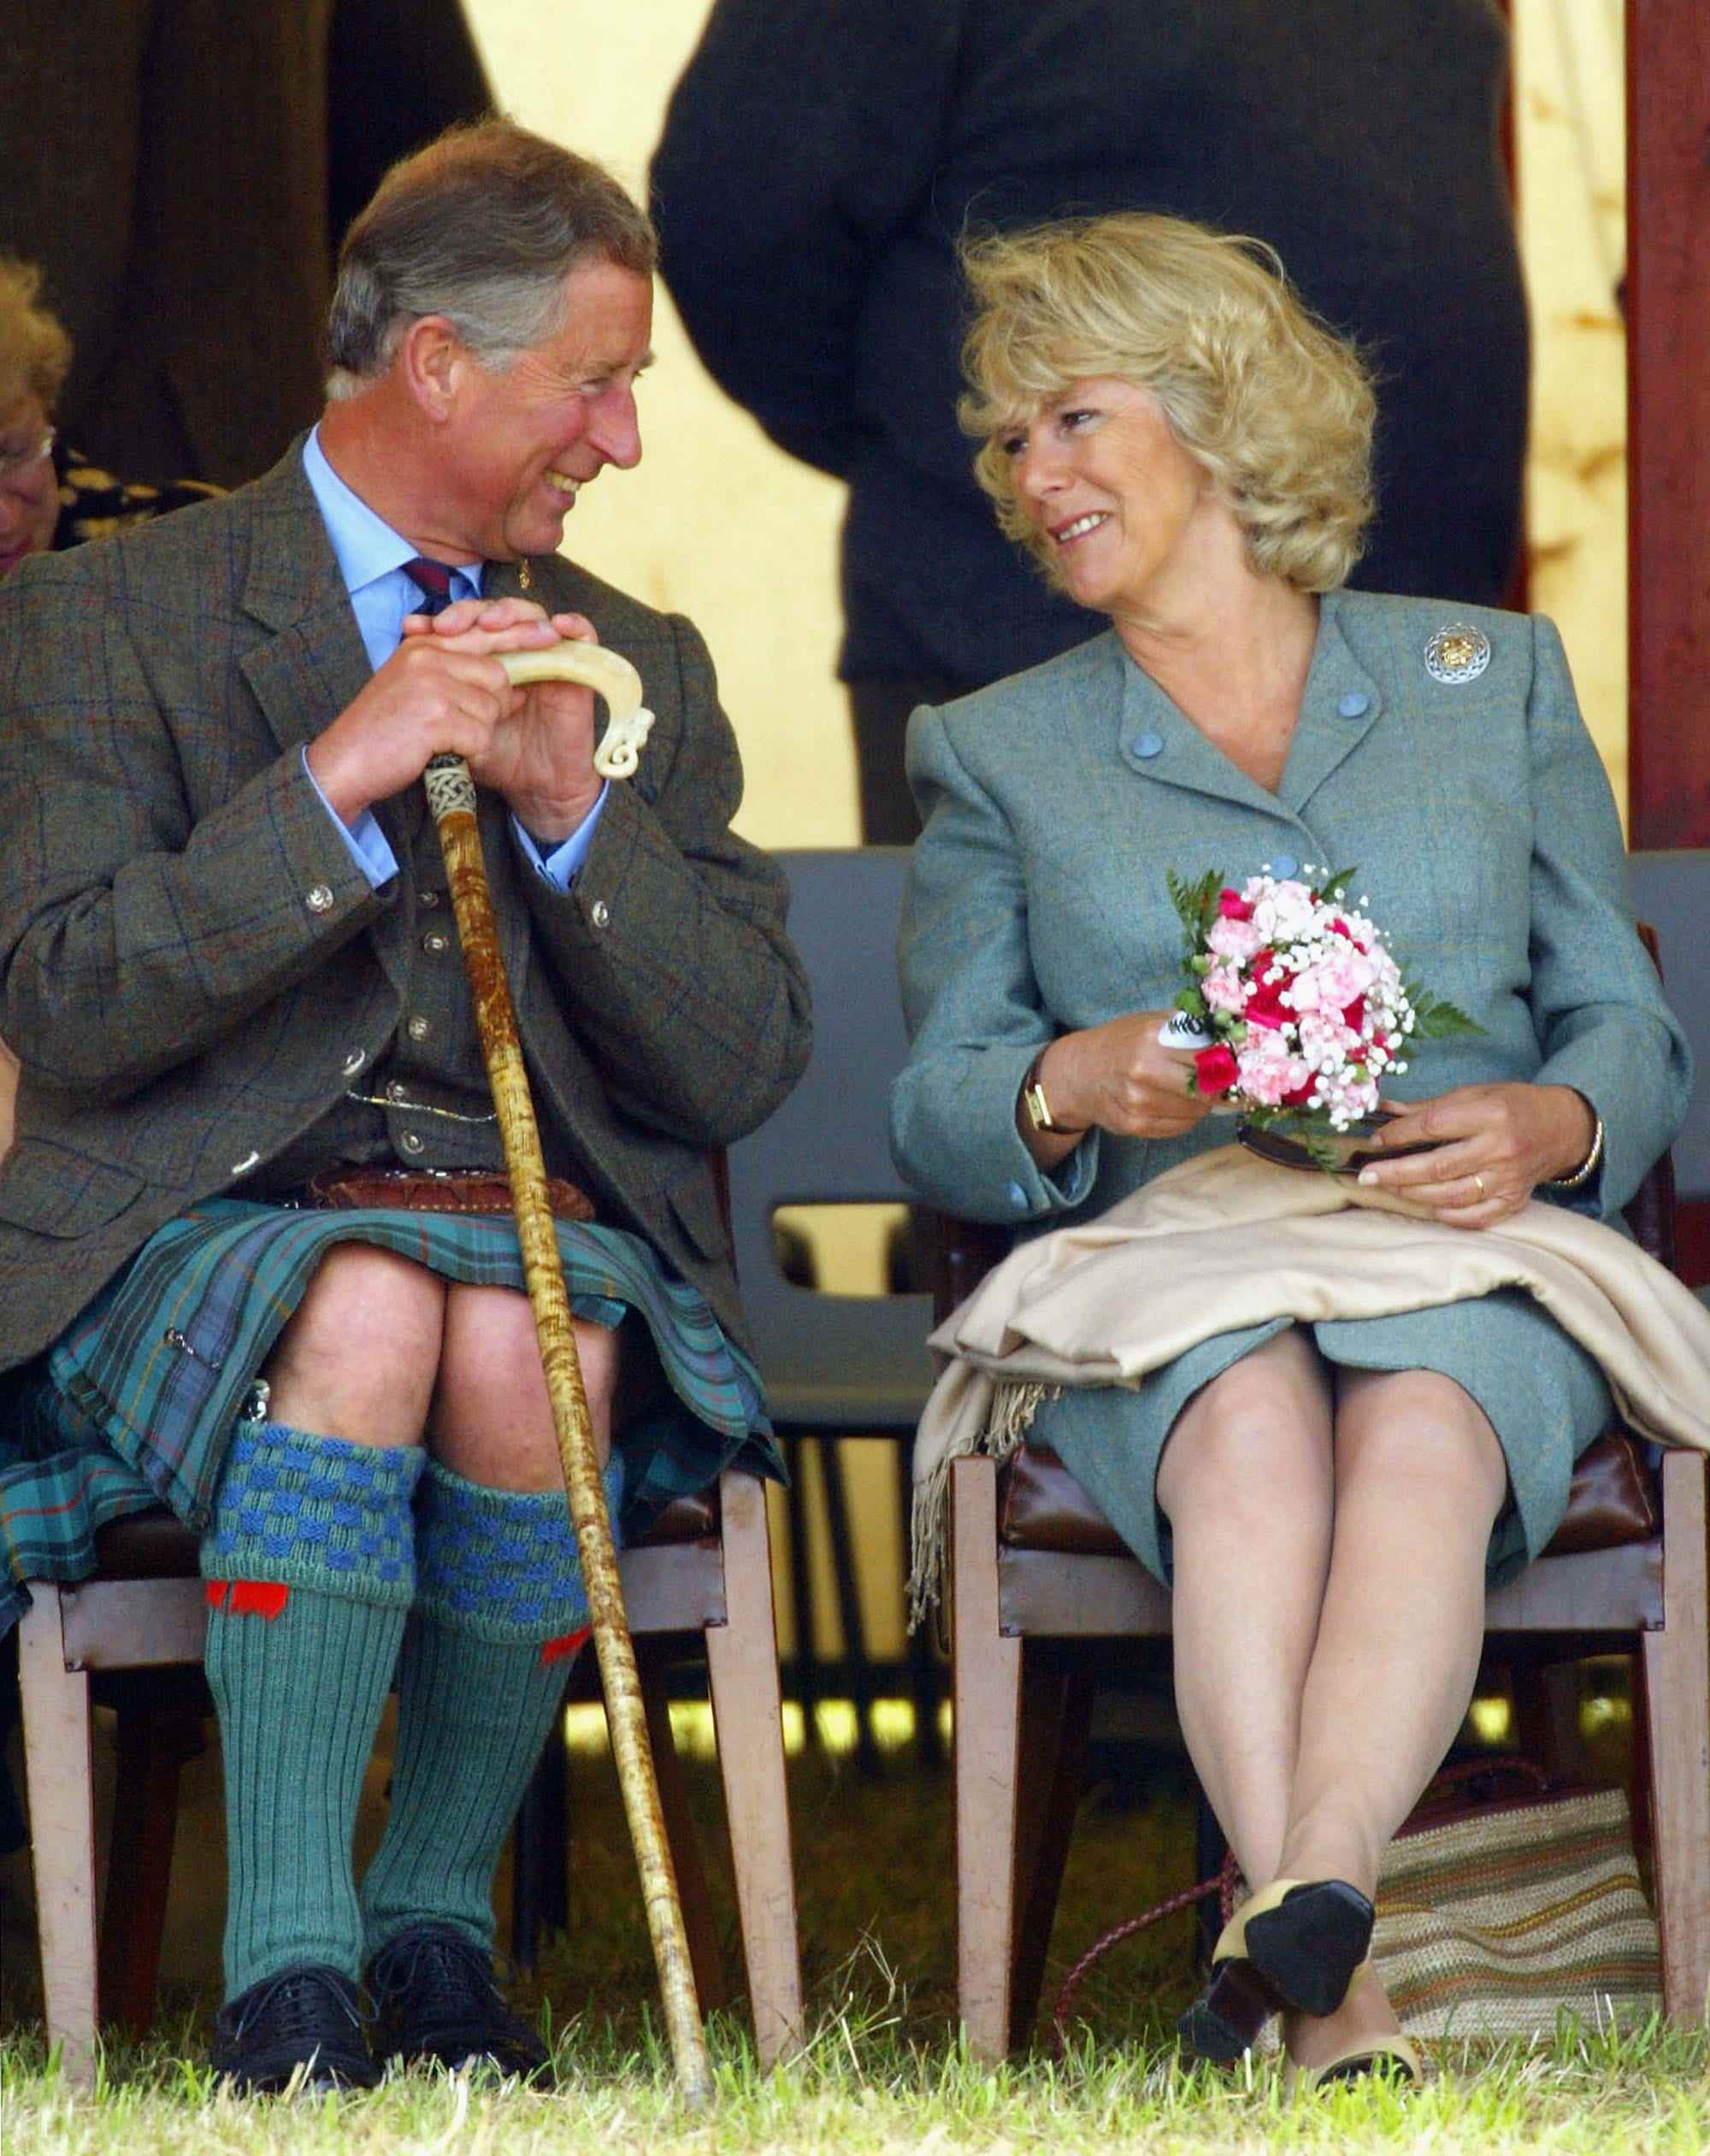 König Charles III und Camilla Parker sehen sich an.